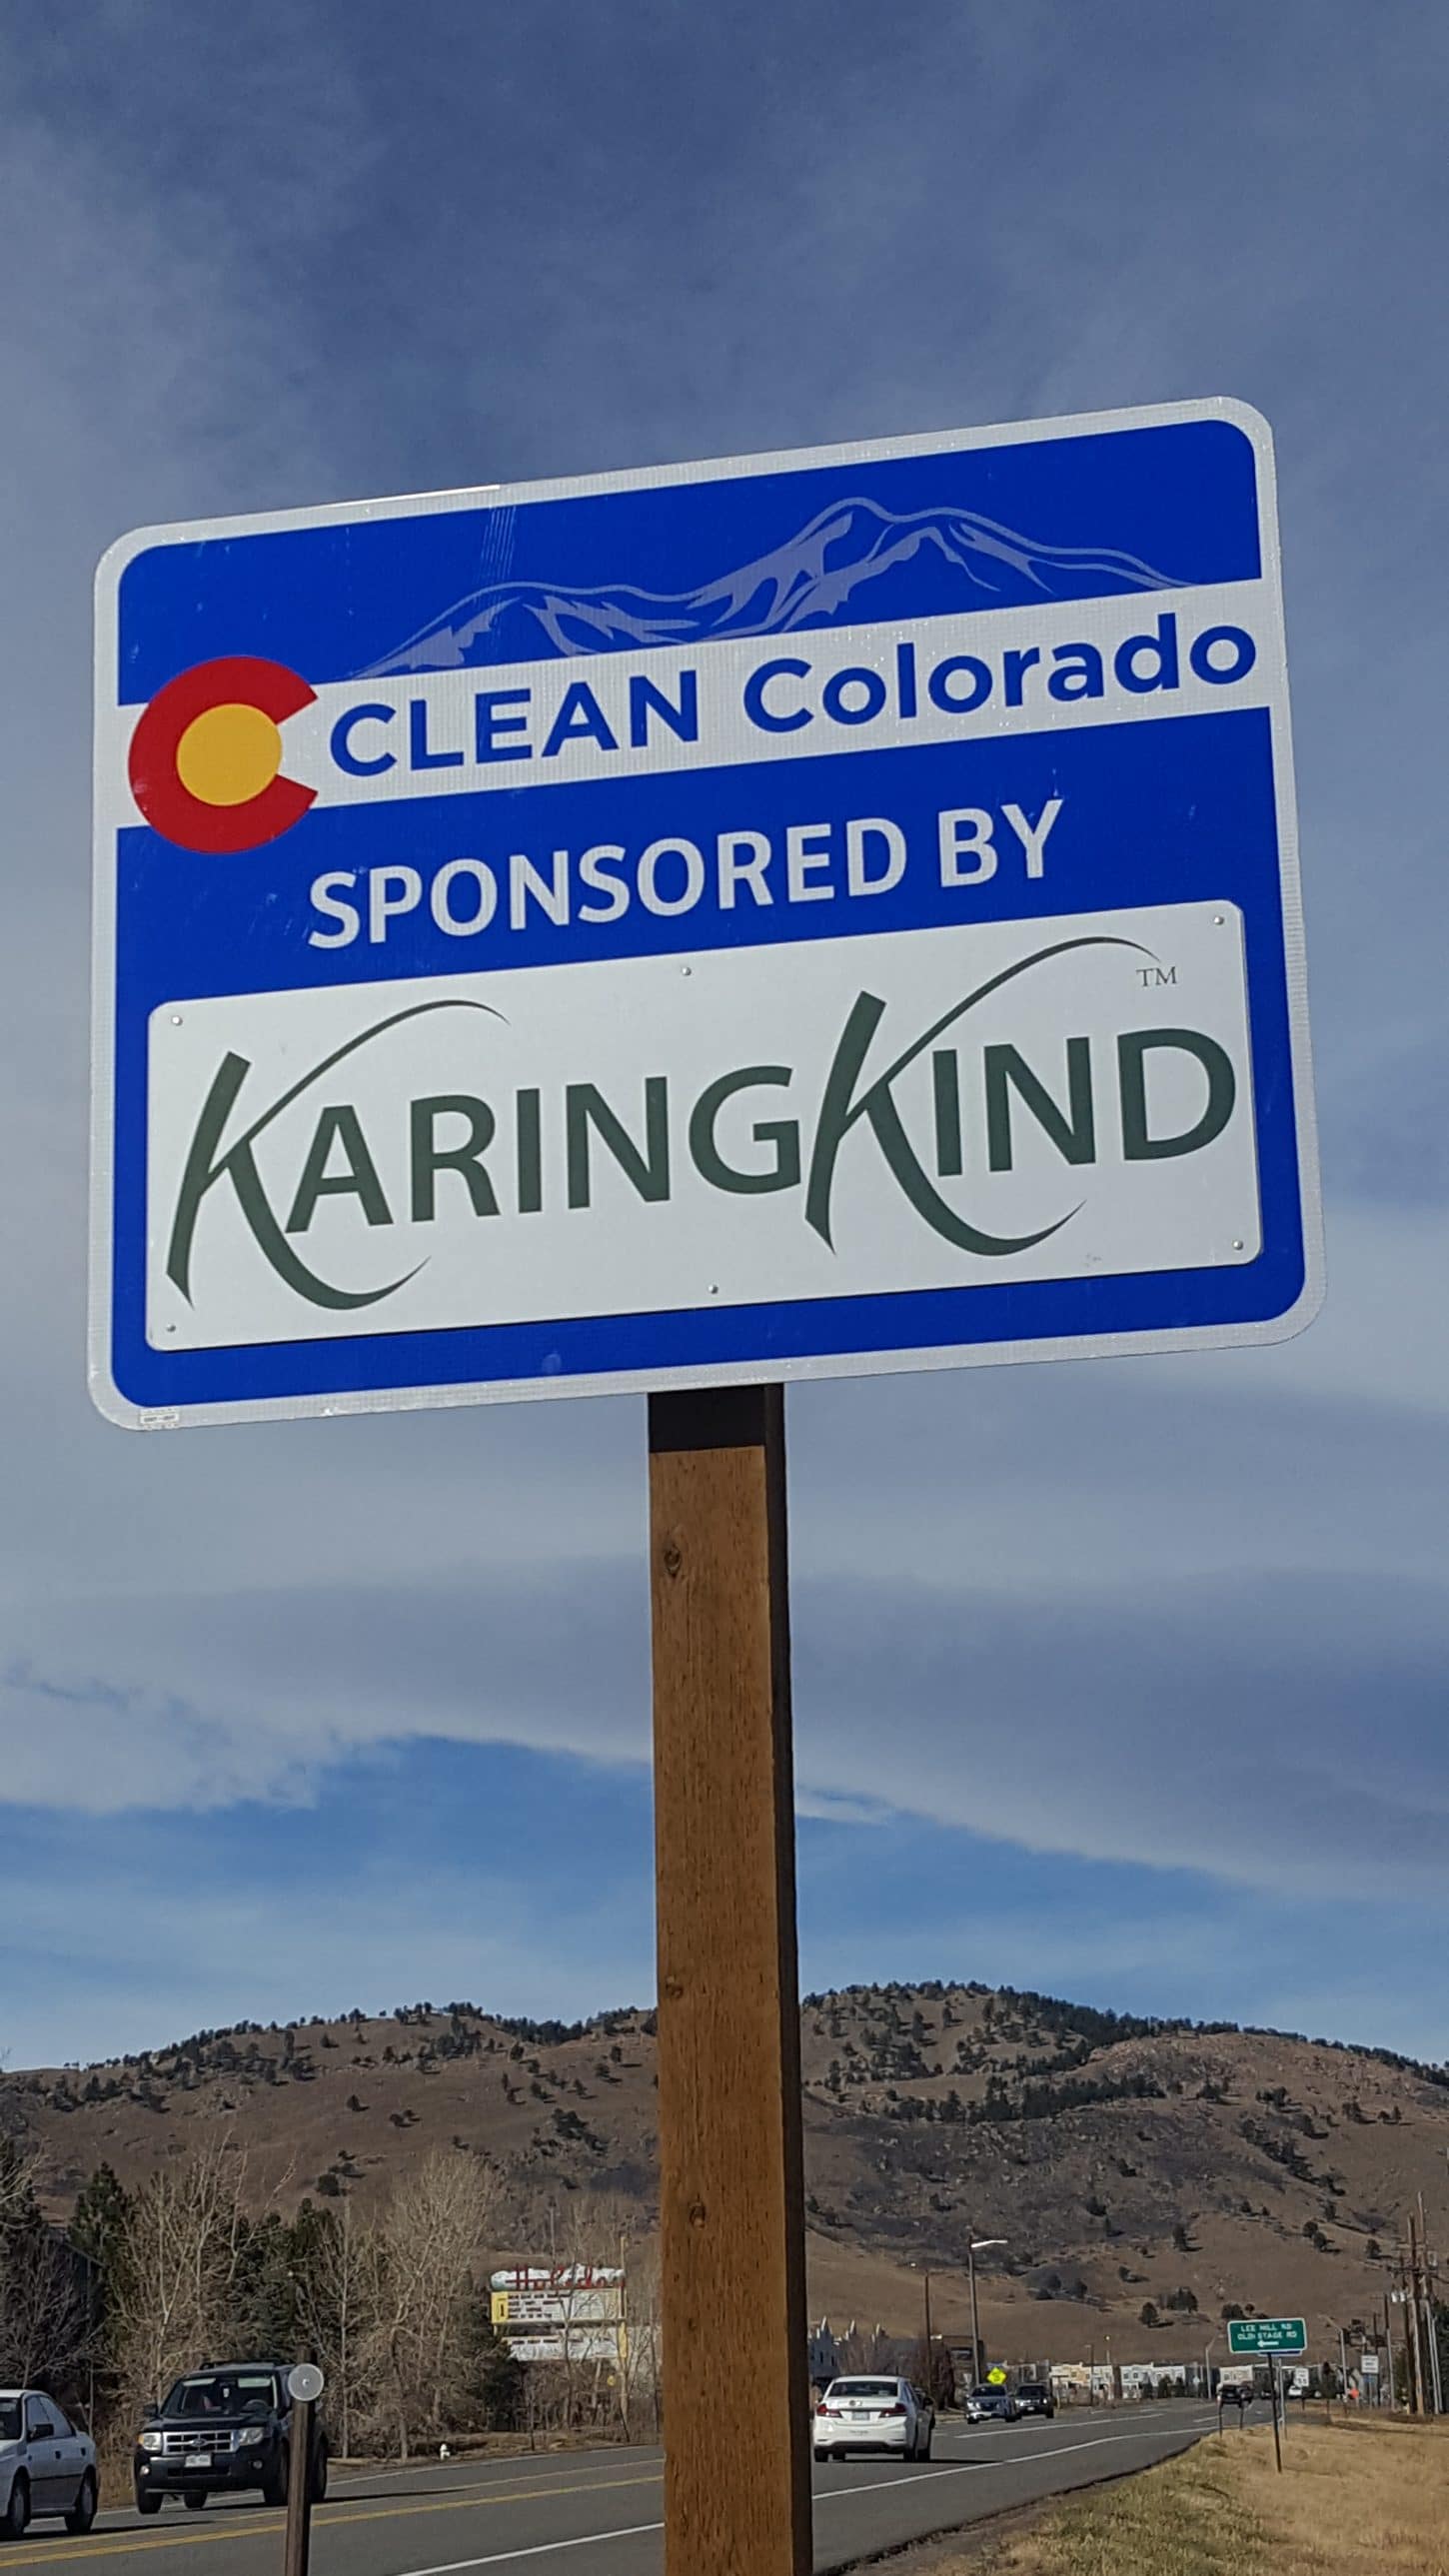 Karing Kind Sponsor a Highway